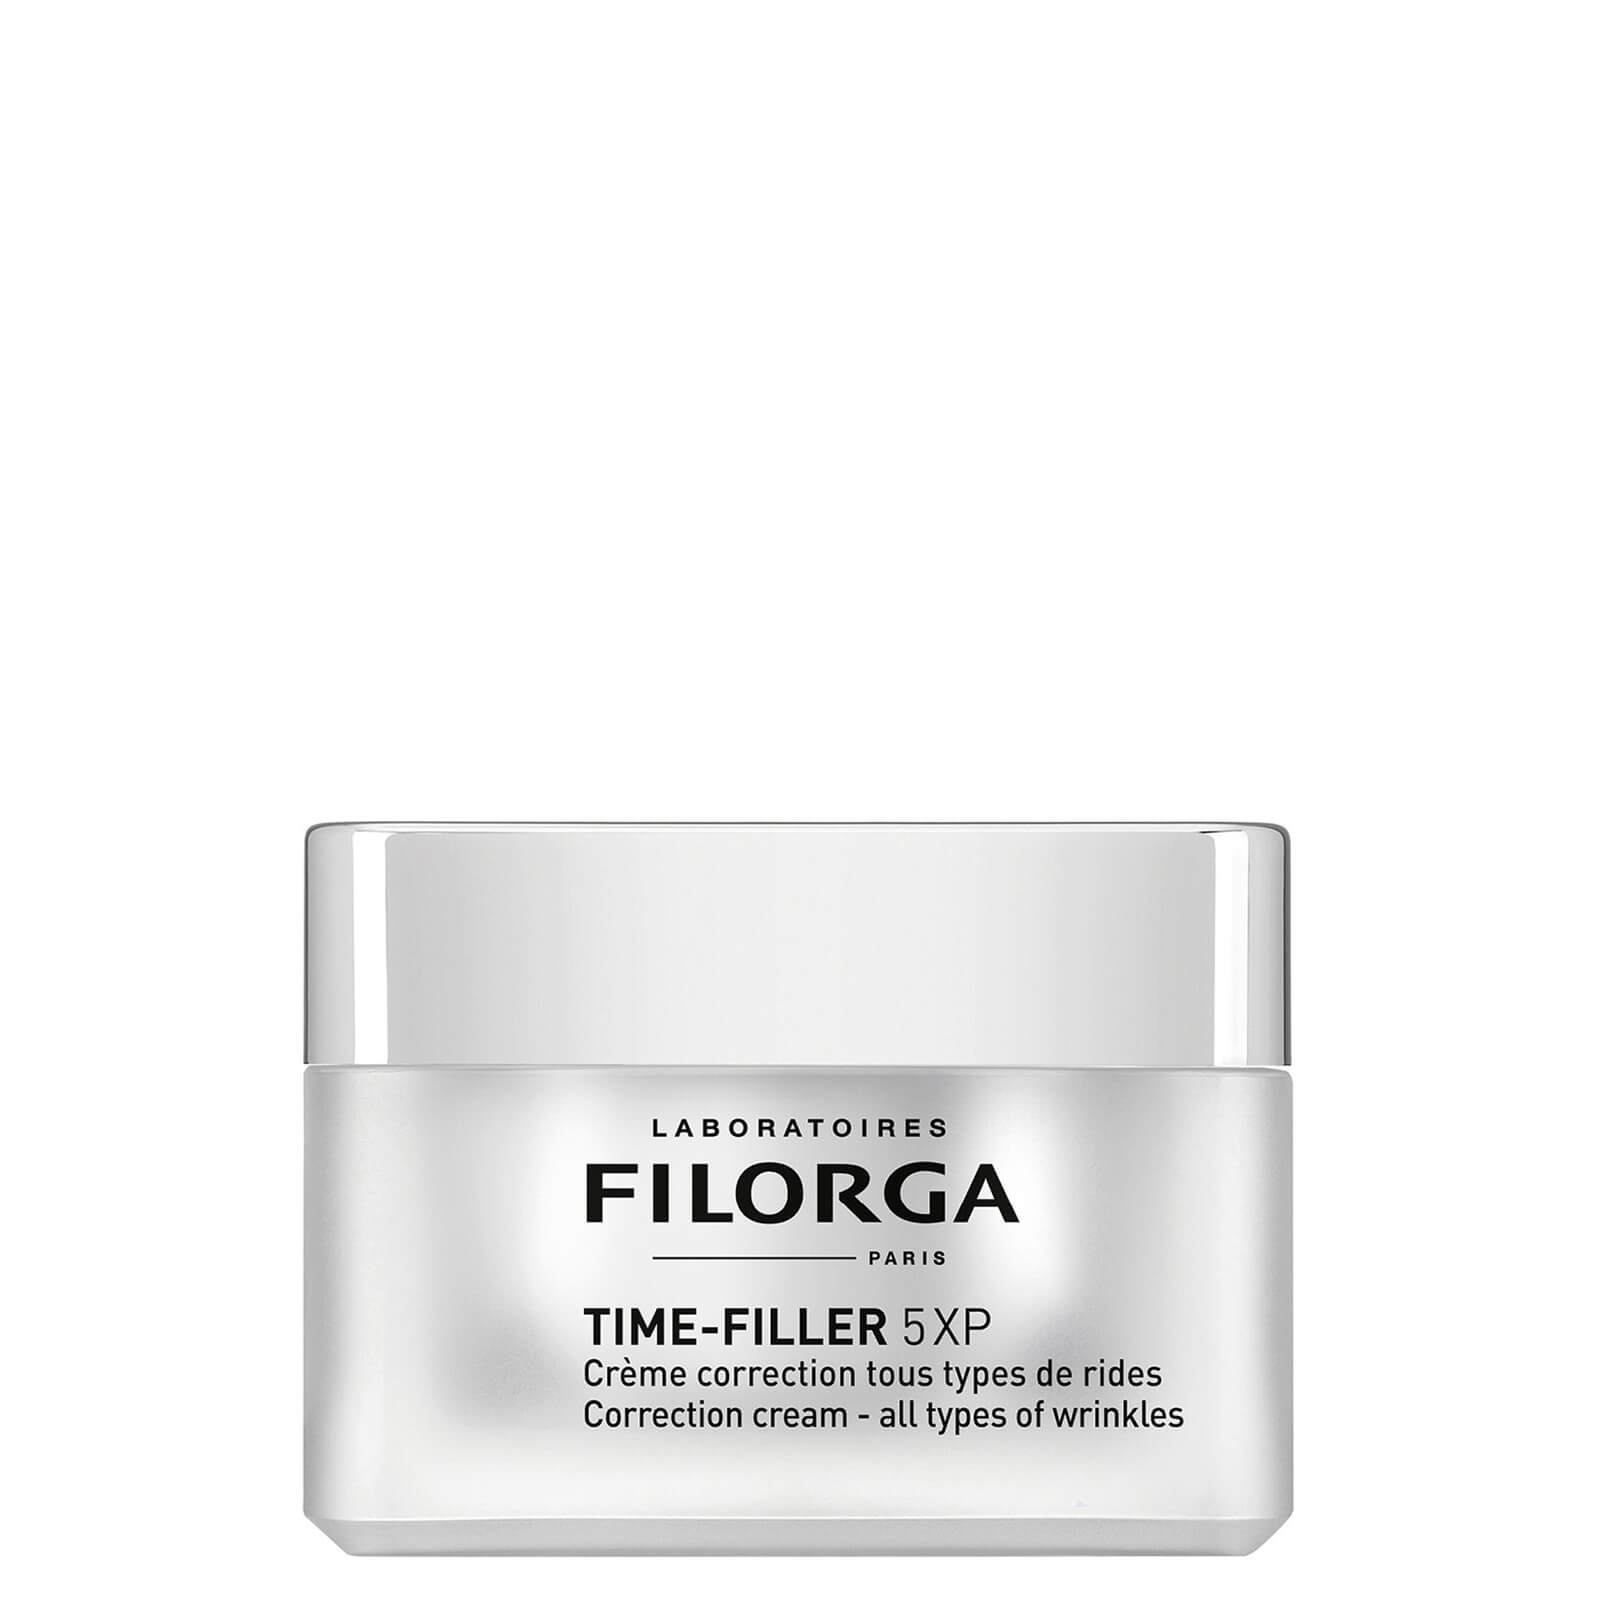 Shop Filorga Time-filler 5-xp Wrinkle Correcting Face And Neck Cream (1.69 Oz.)